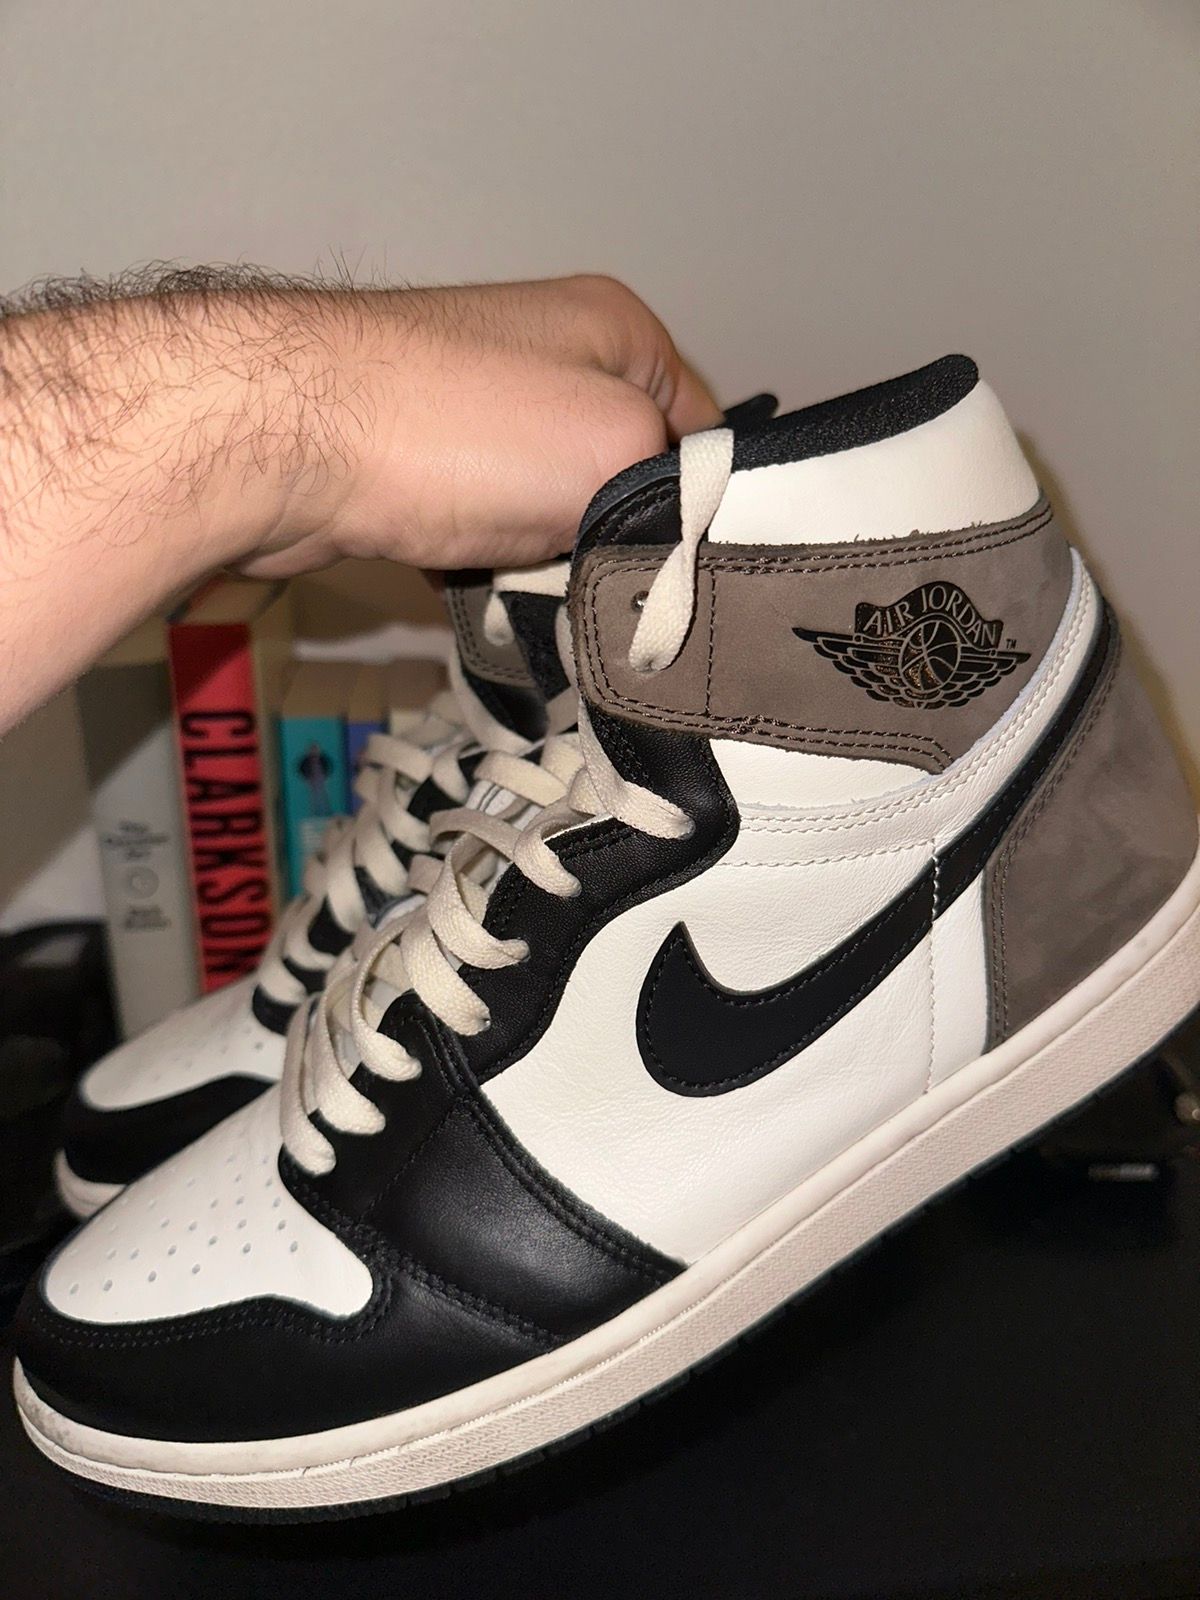 Pre-owned Jordan Nike Air Jordan 1 Retro High Og “mocha” Shoes In Brown